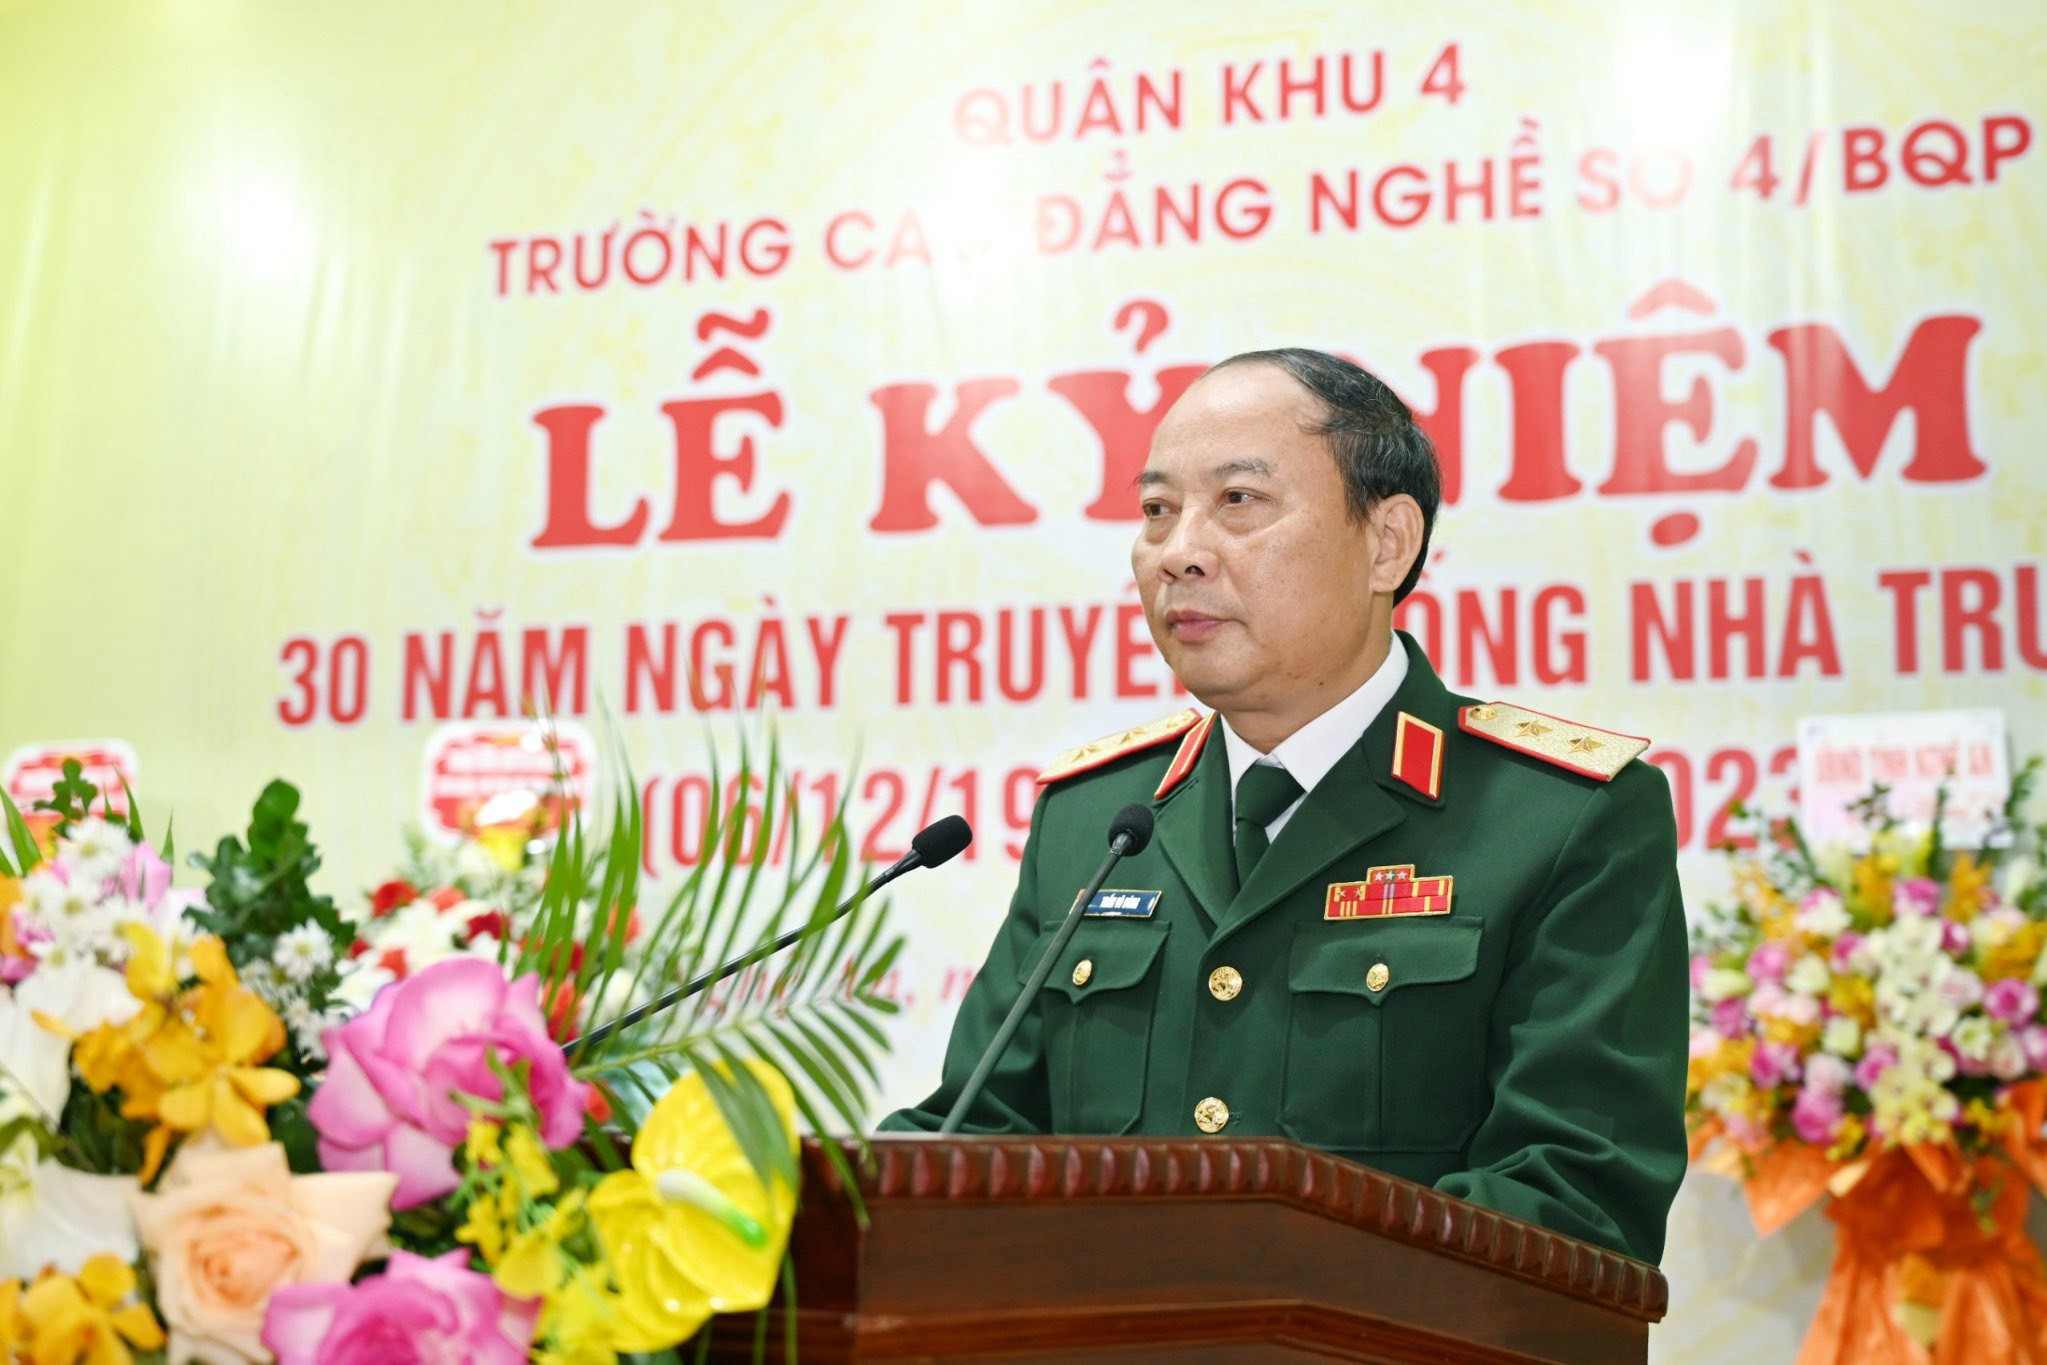 bna_Trung tướng Trần Võ Dũng, Bí thư Đảng ủy, Chính ủy Quân khu 4 phát biểu tại Lễ kỷ niệm..jpg